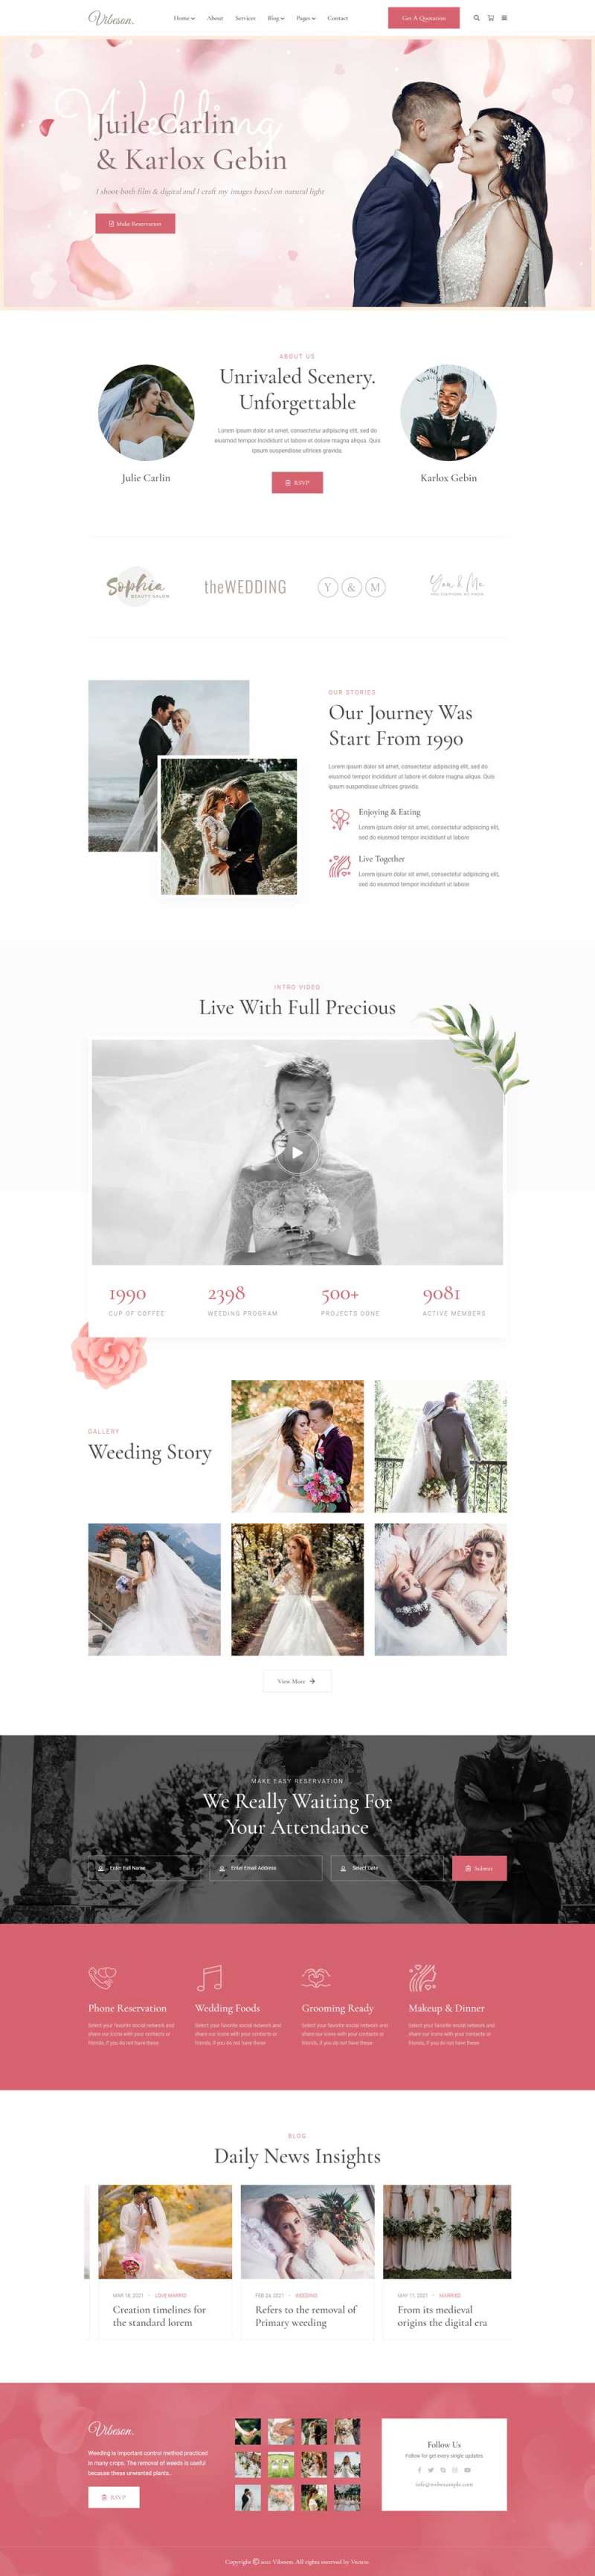 精美的婚礼活动策划摄影HTML模板-何以博客